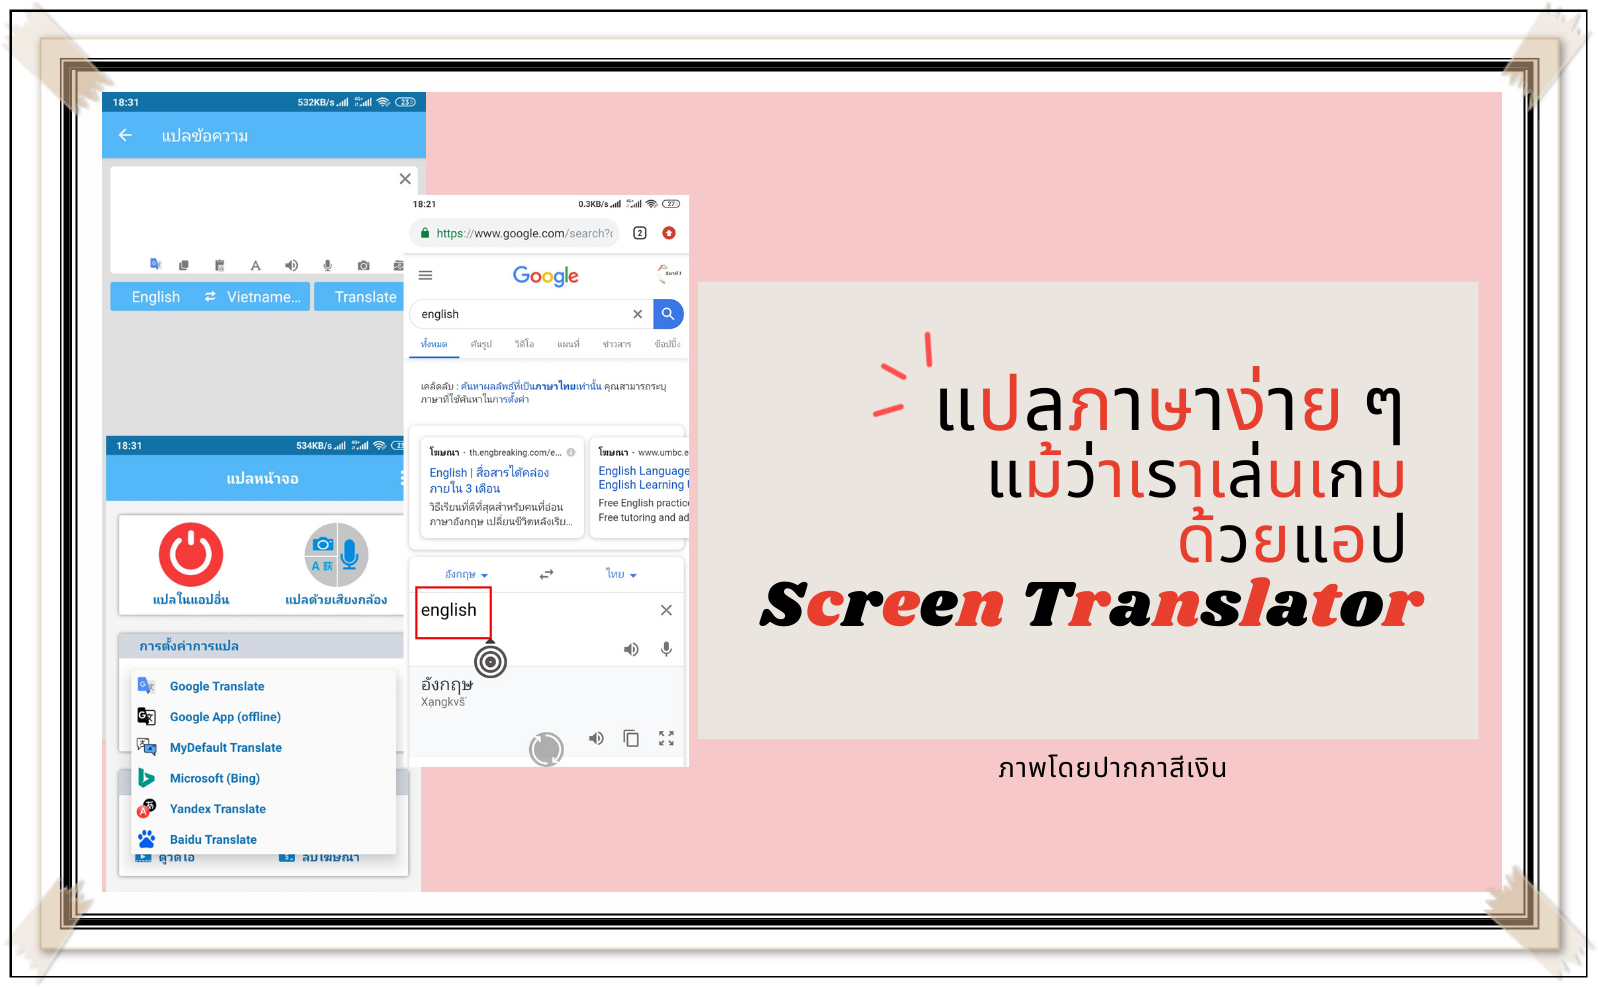 แปลภาษาง่าย ๆ แม้ว่าเราเล่นเกม ด้วยแอป Screen Translator